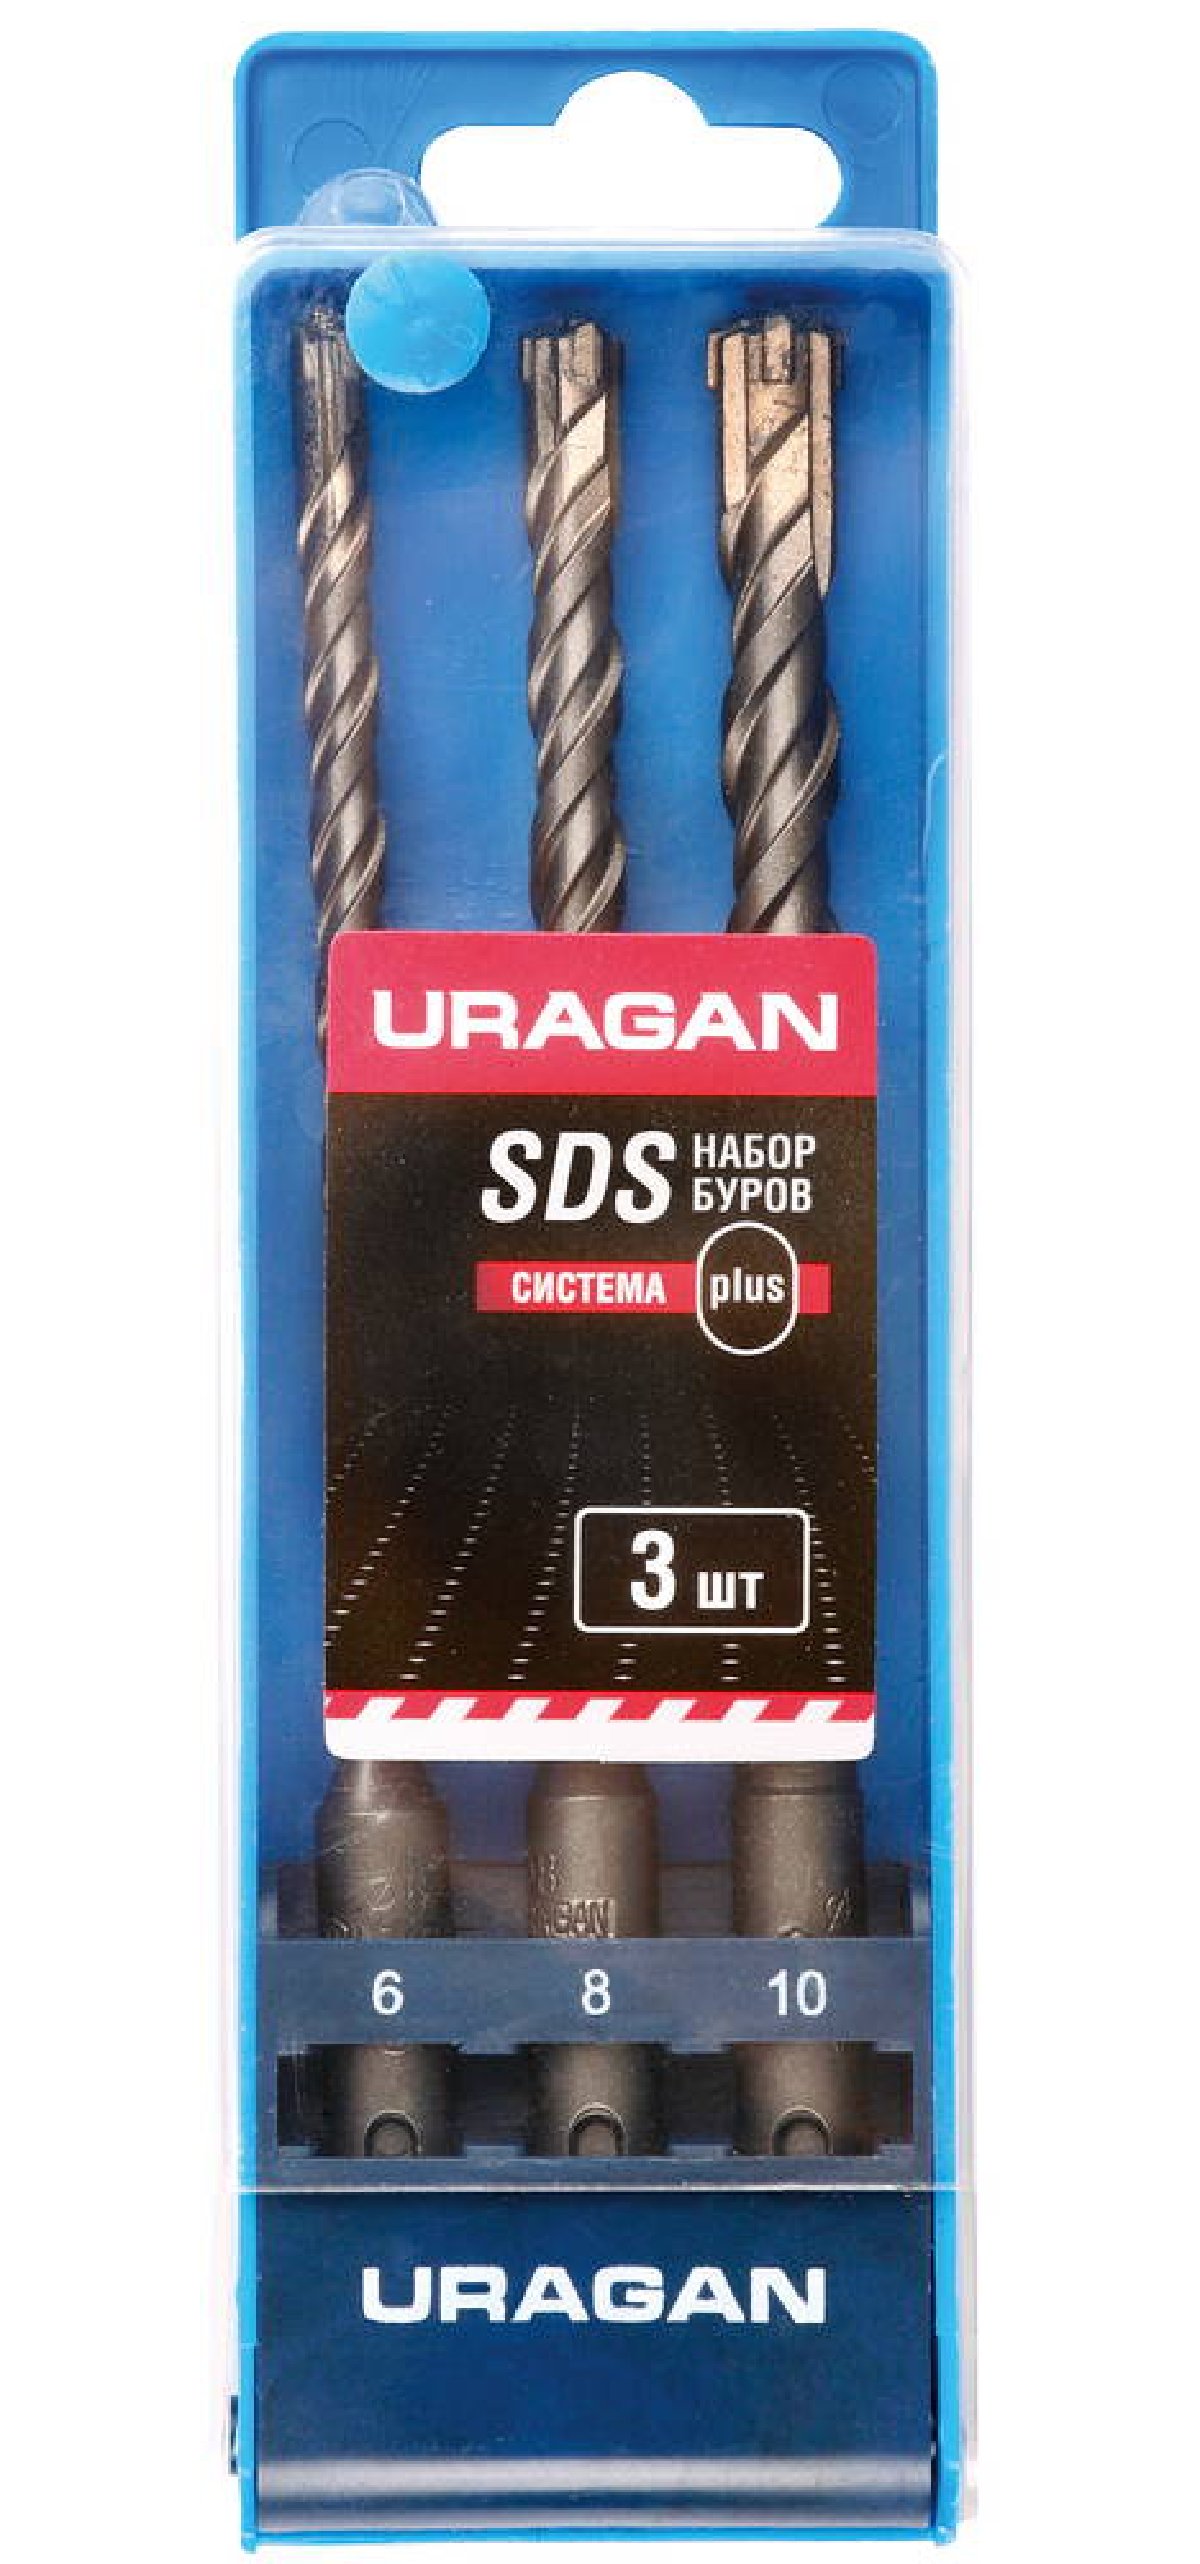 URAGAN   SDS-plus 3  6  160, 8  160, 10  160 , (901-25554-H3)